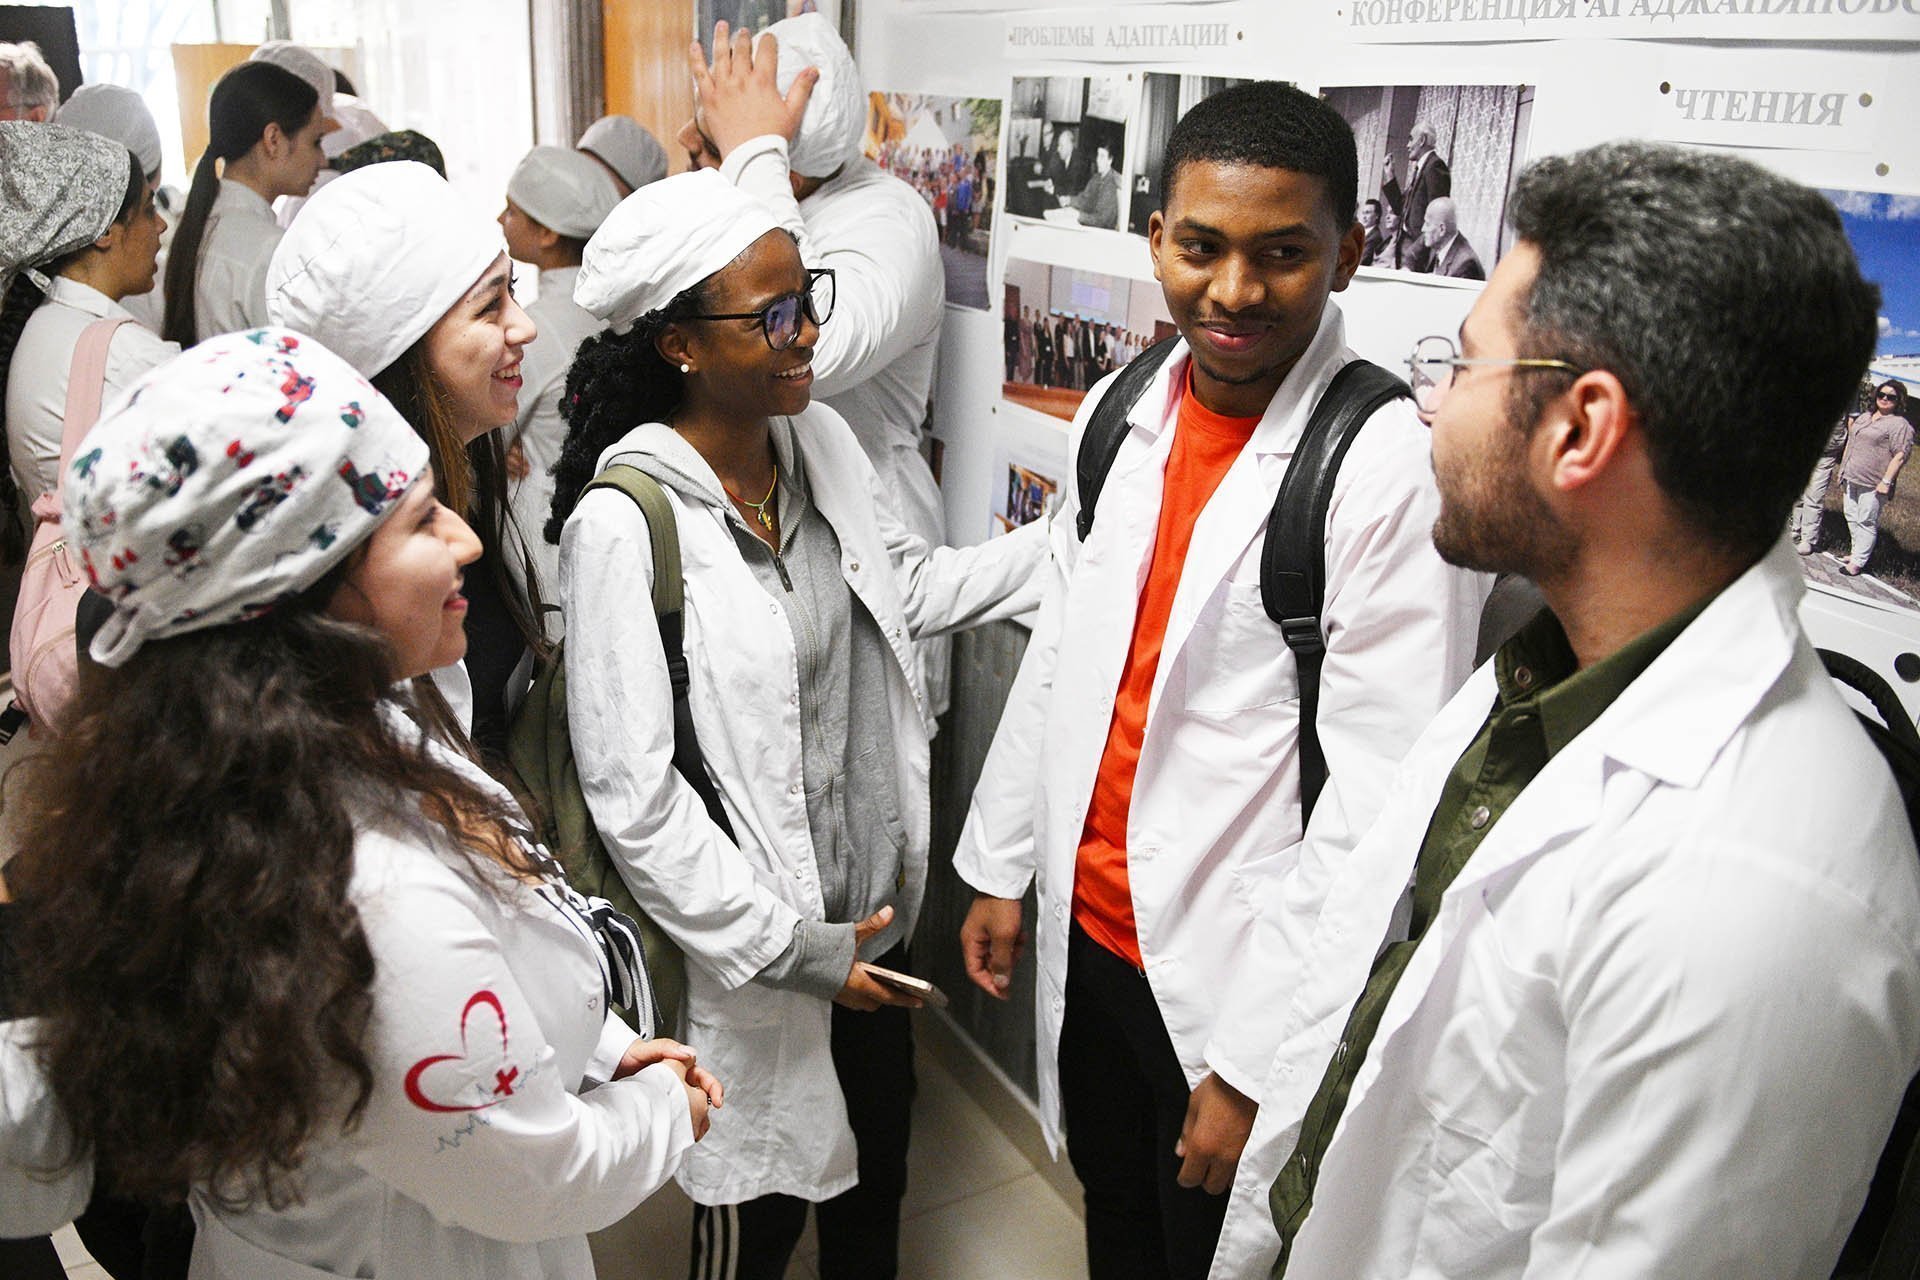 Студенты разных национальностей общаются в коридоре вуза